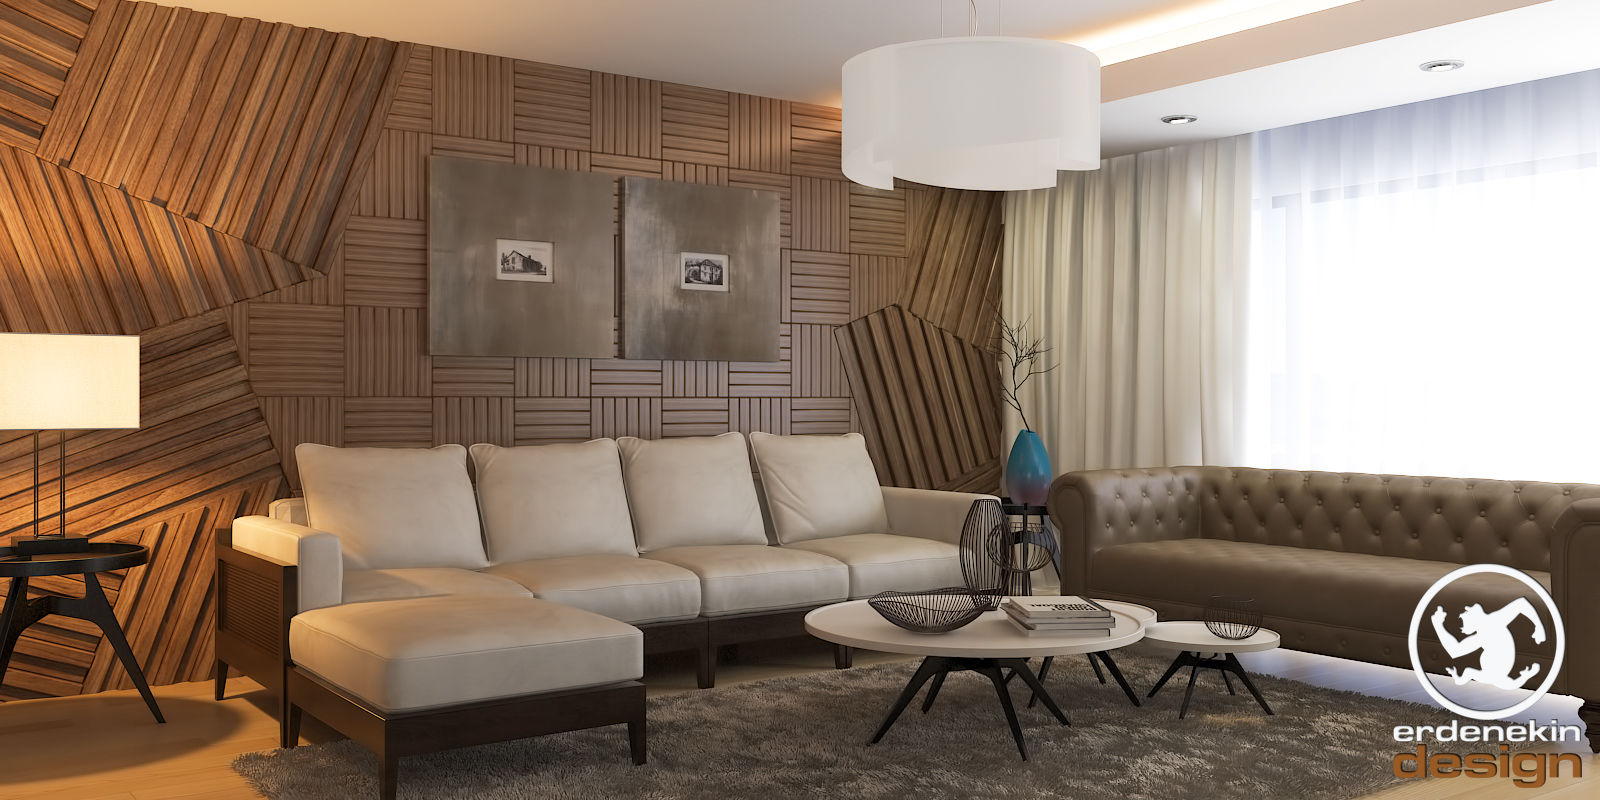 New Anka Residence, Erden Ekin Design Erden Ekin Design Salas de estar modernas